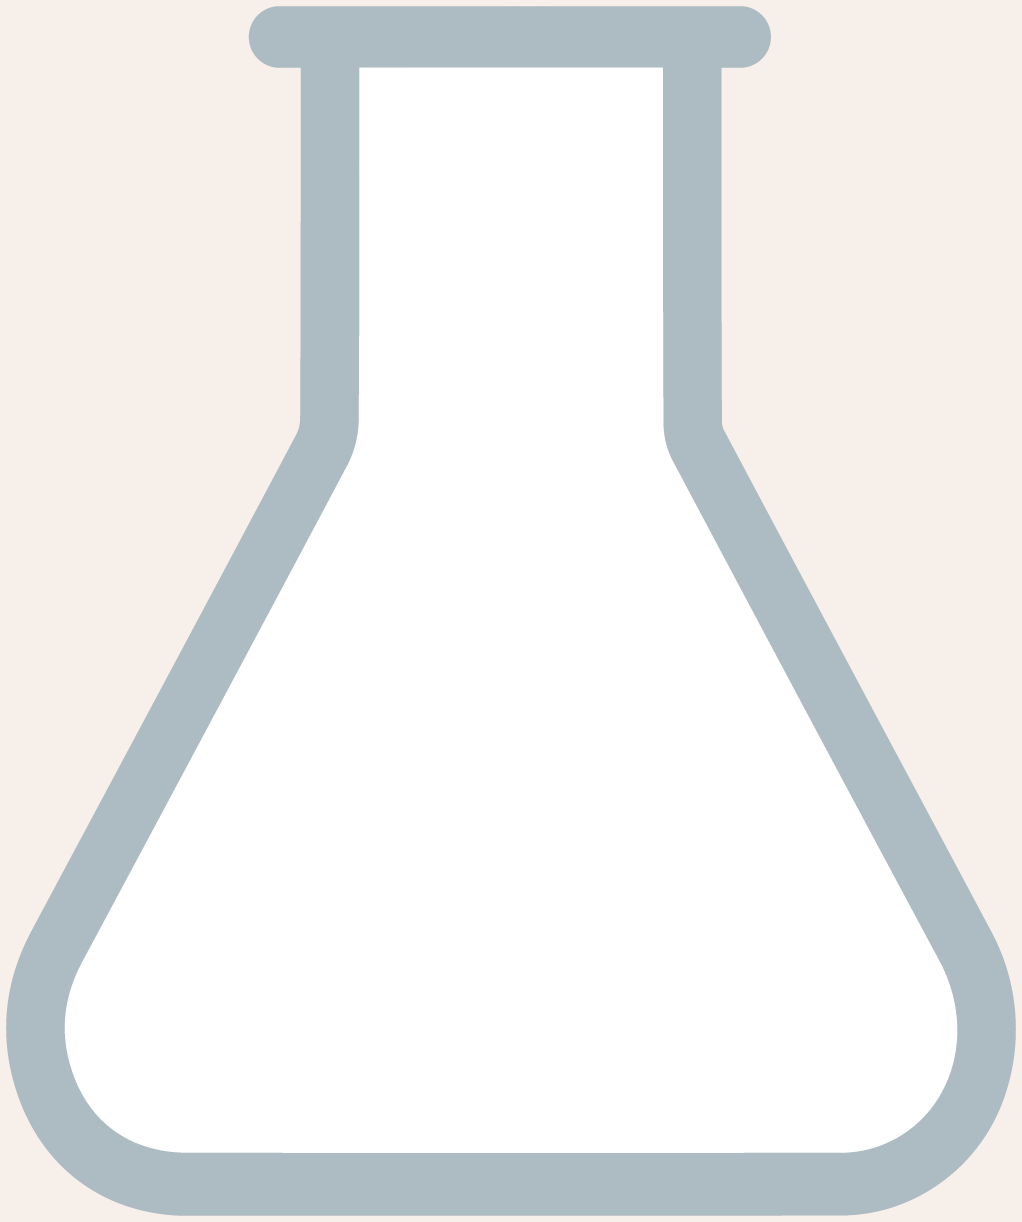 Flask image